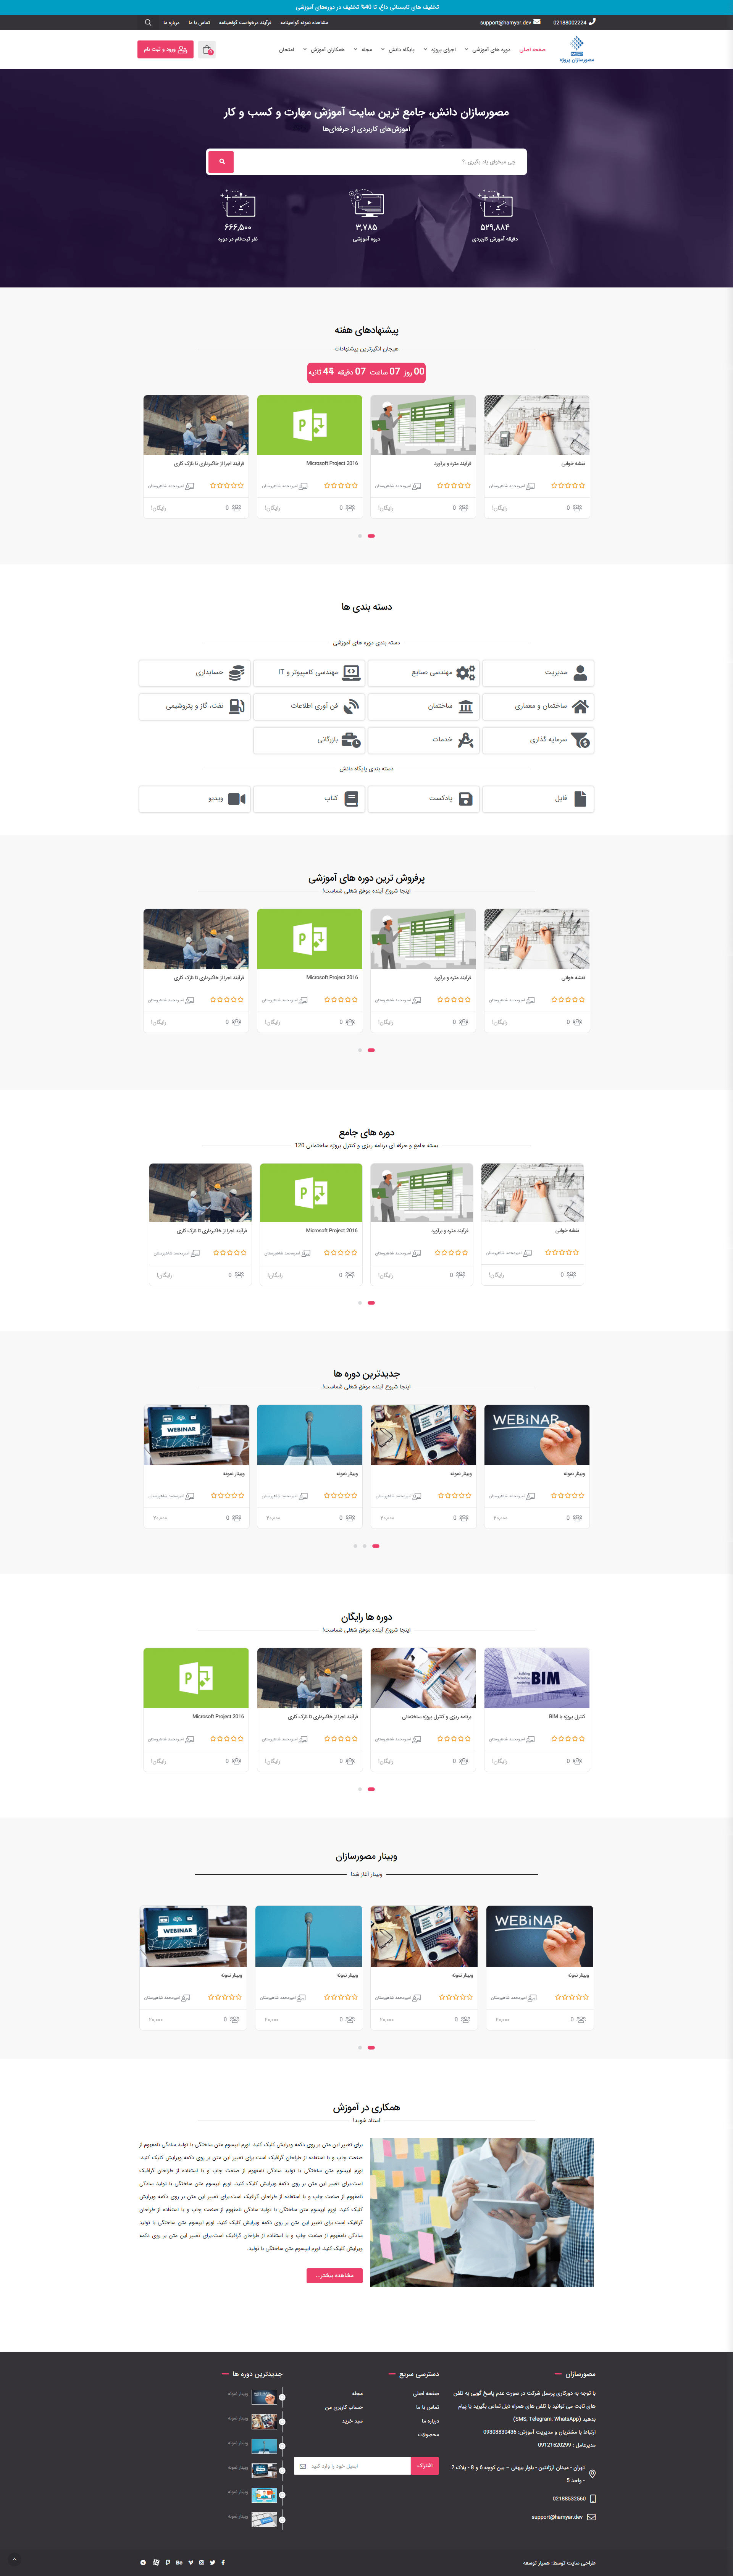 طراحی سایت آموزشی مصورسازان پروژه